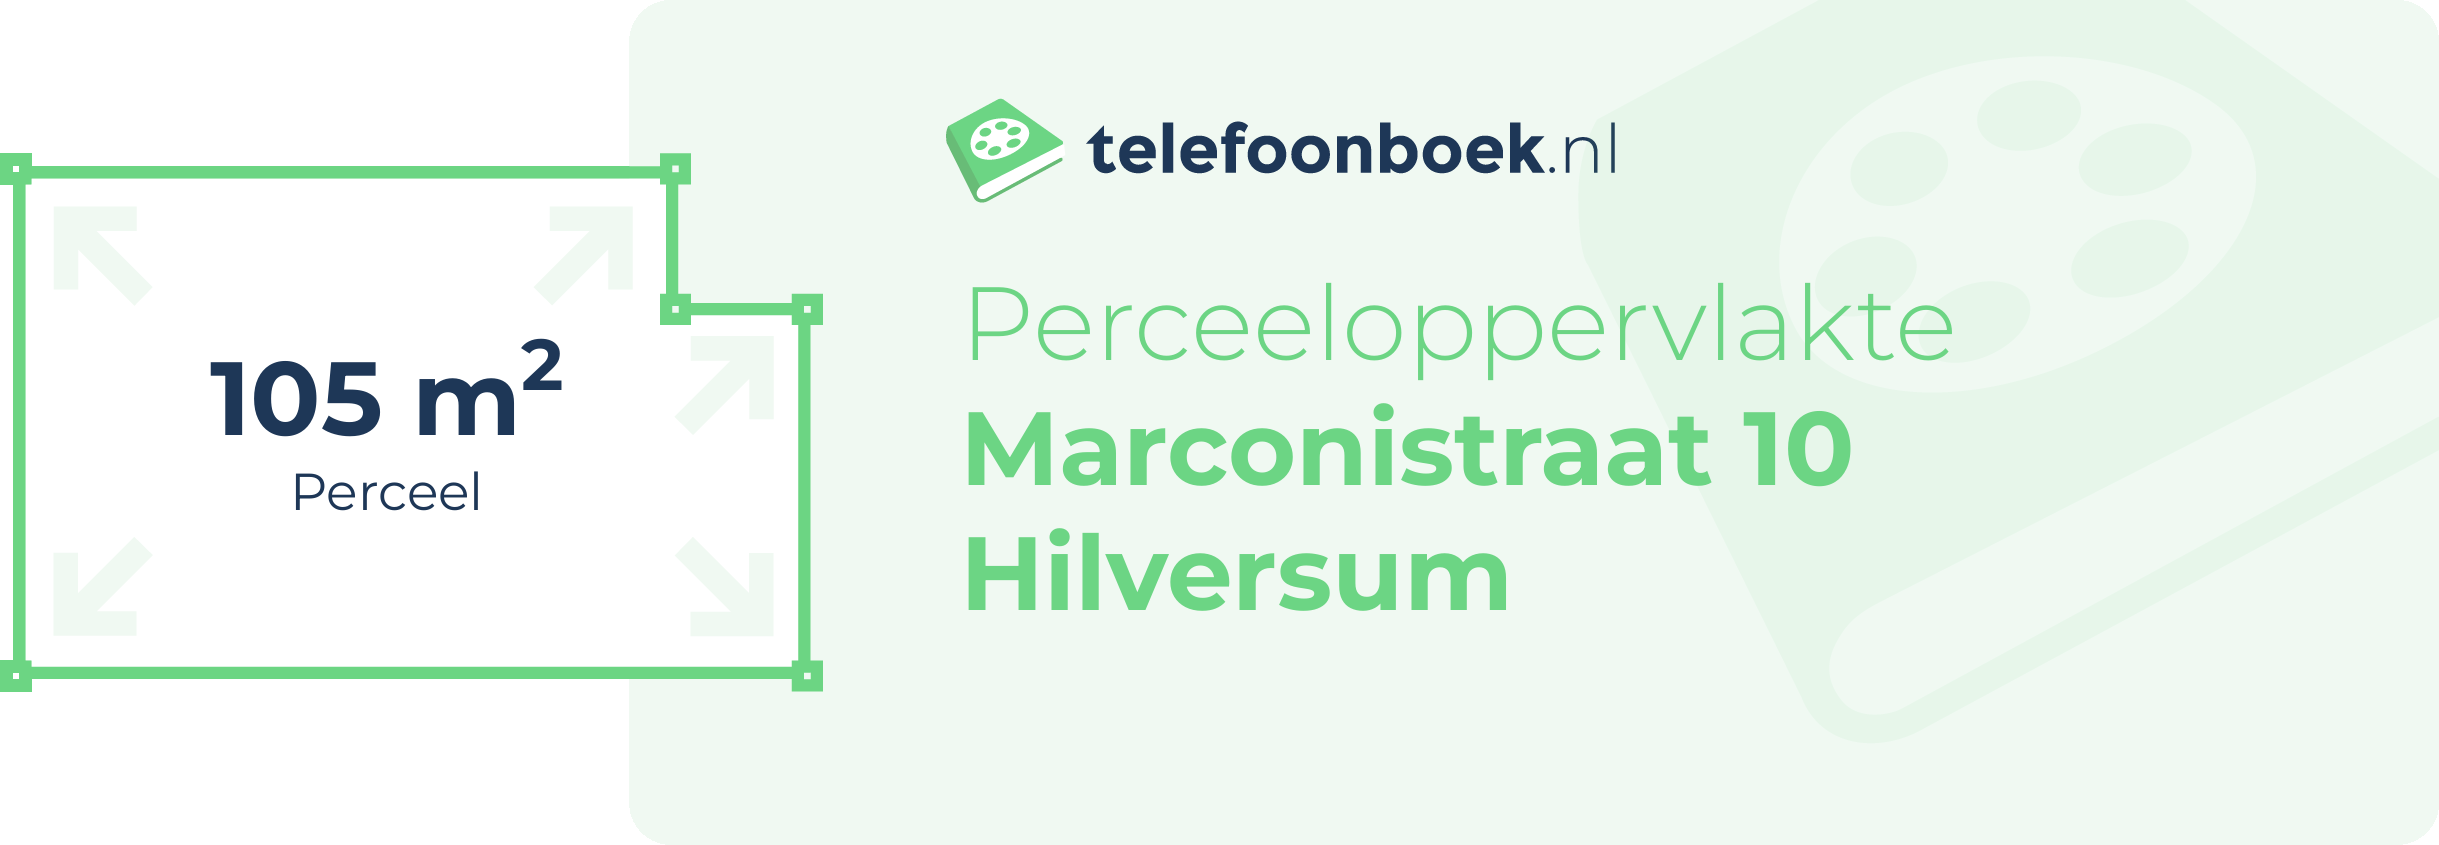 Perceeloppervlakte Marconistraat 10 Hilversum